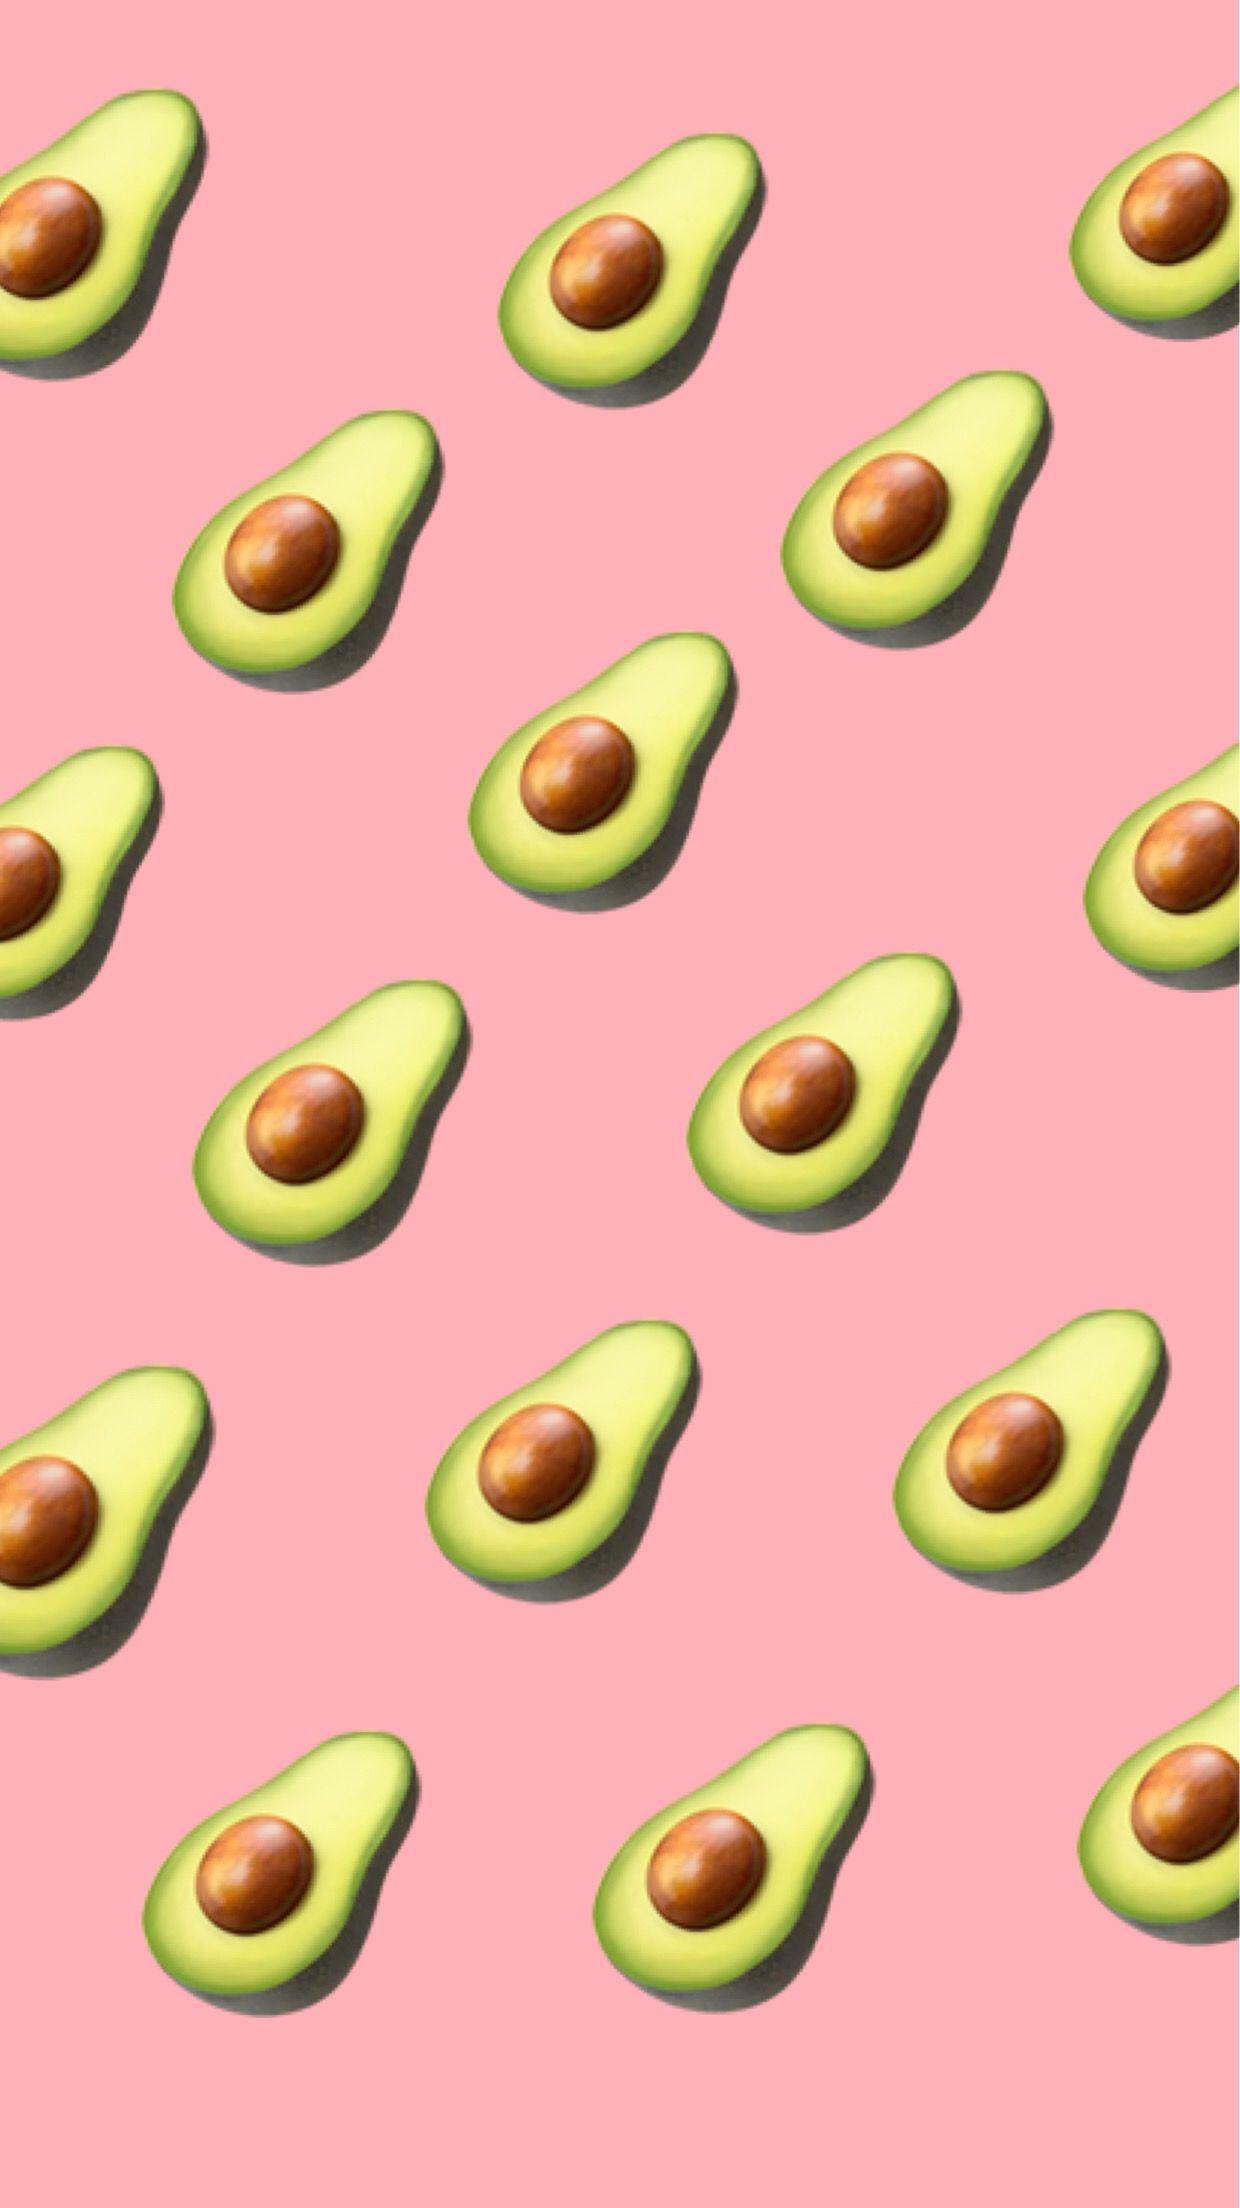 Free Vector  Half avocados background vector